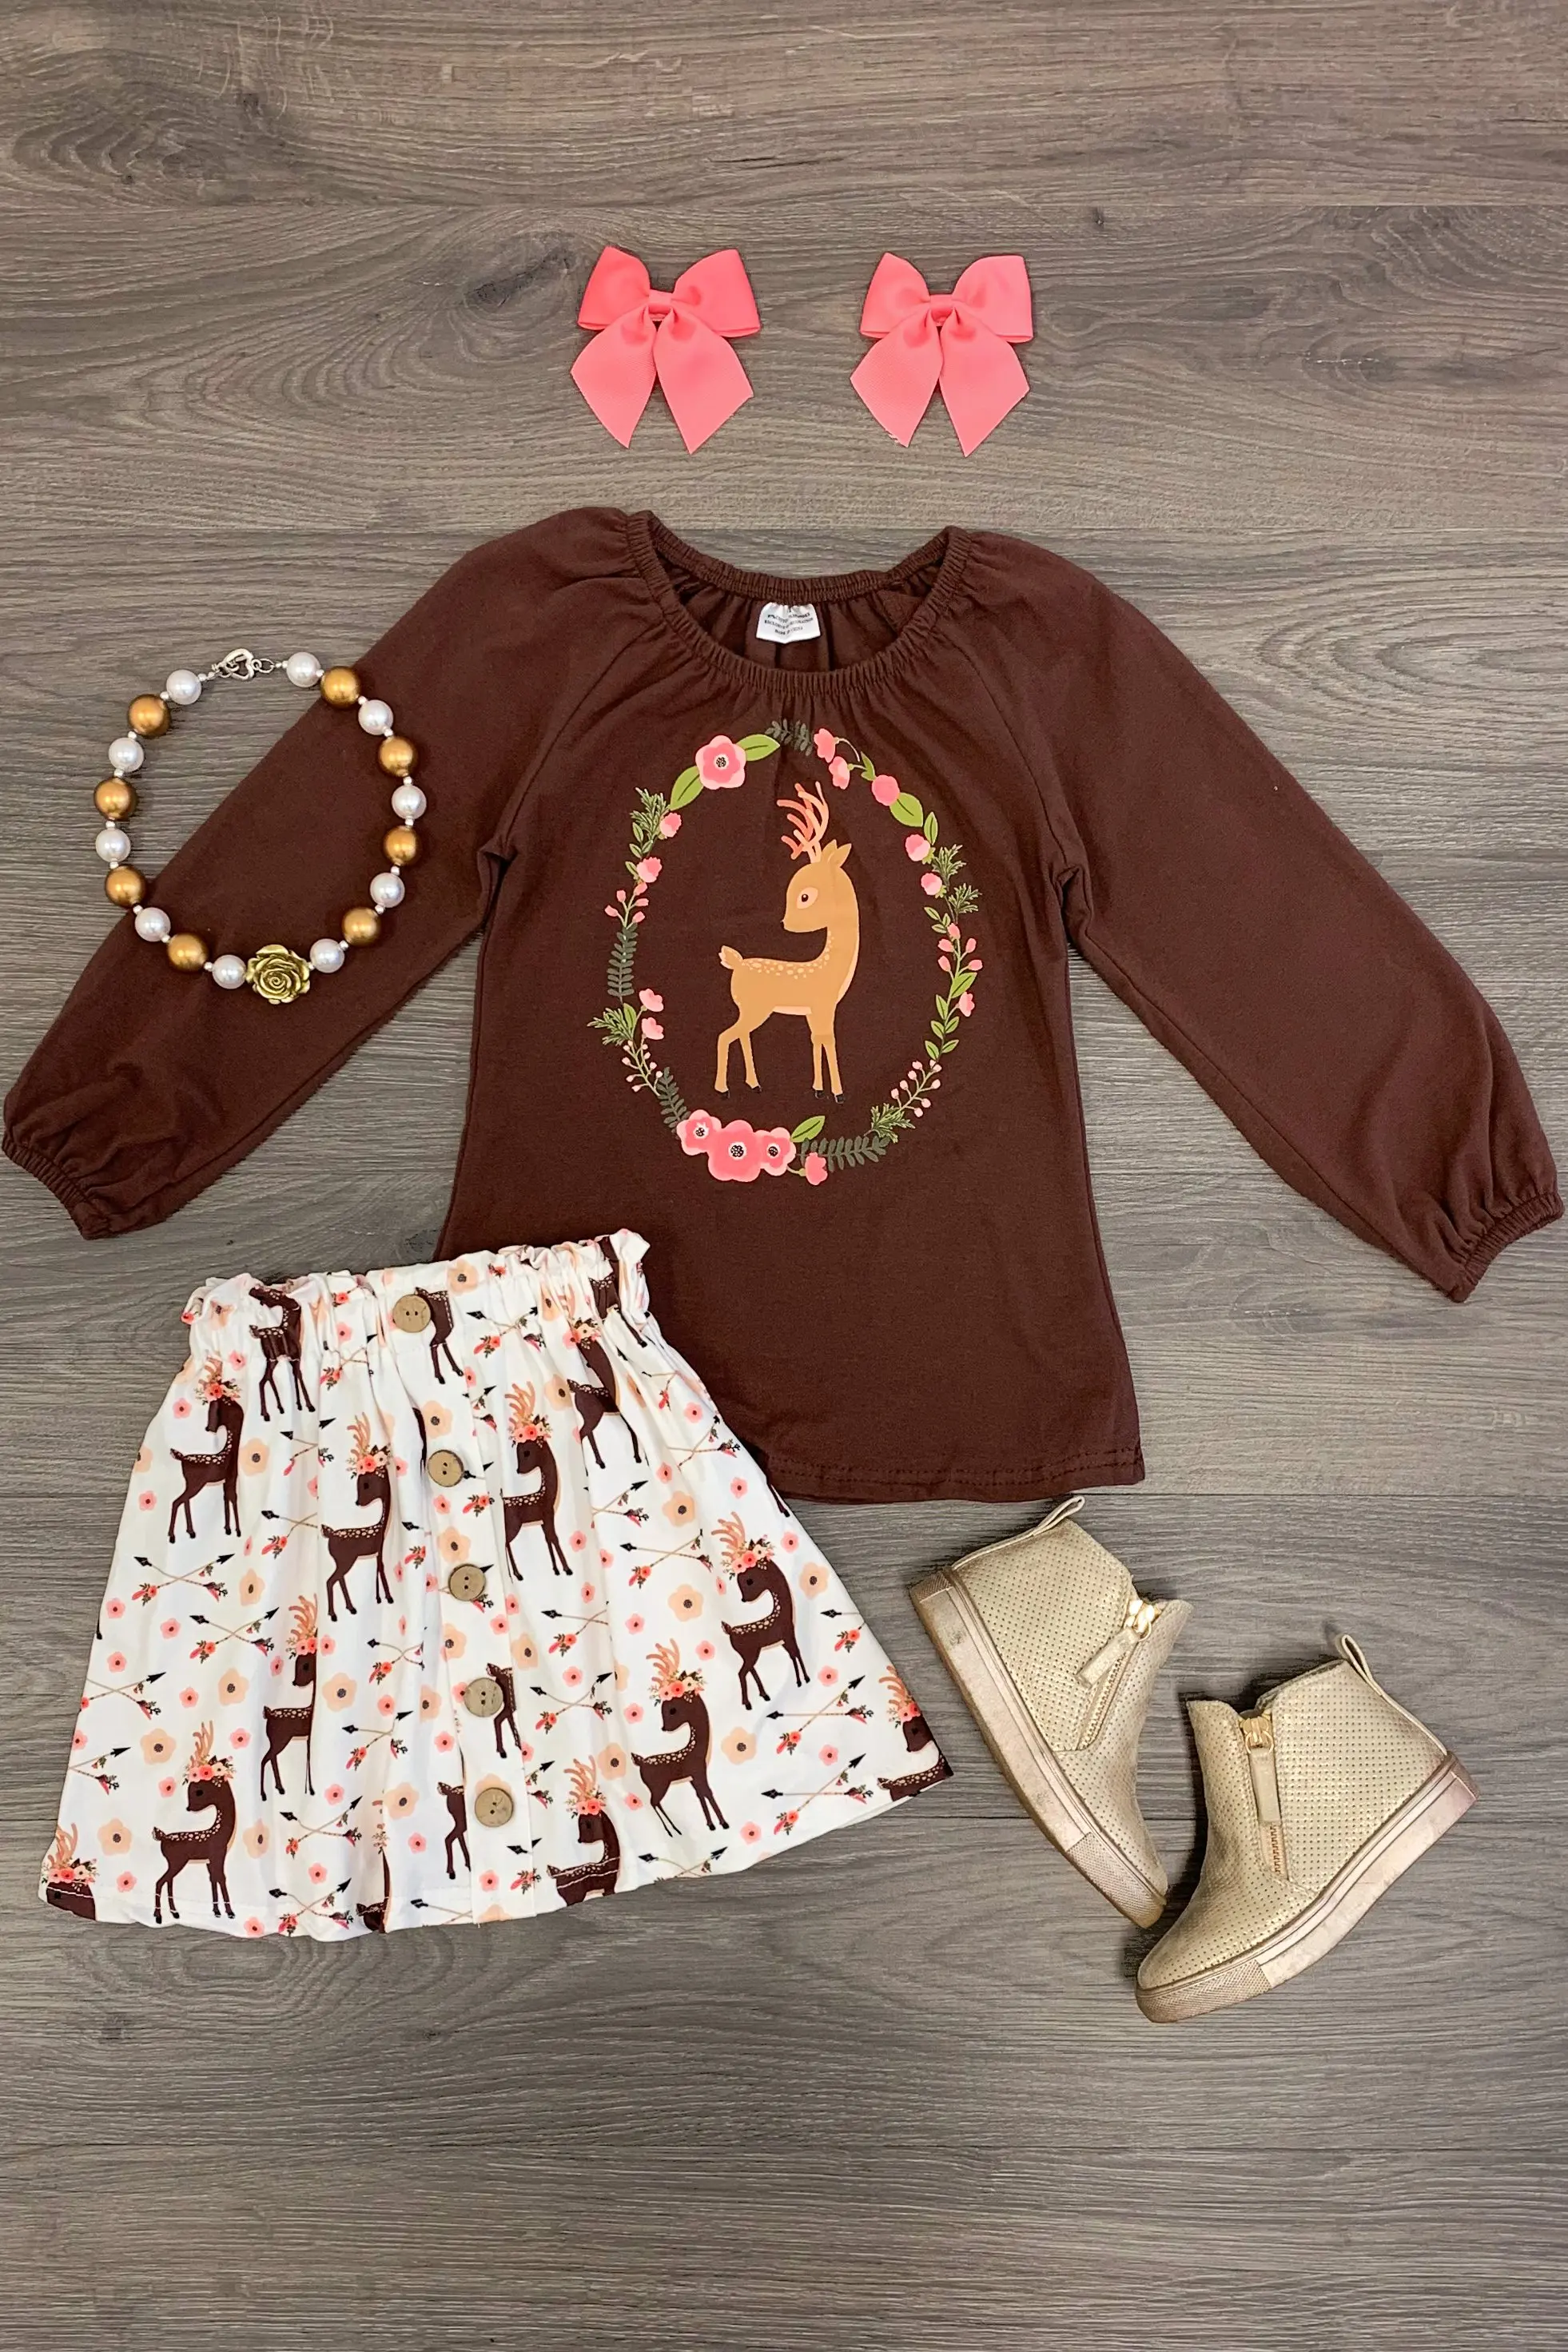 Emmababy Рождественская одежда для маленьких девочек футболка с длинными рукавами и цветочным принтом Топ+ длинные штаны, юбка на осень